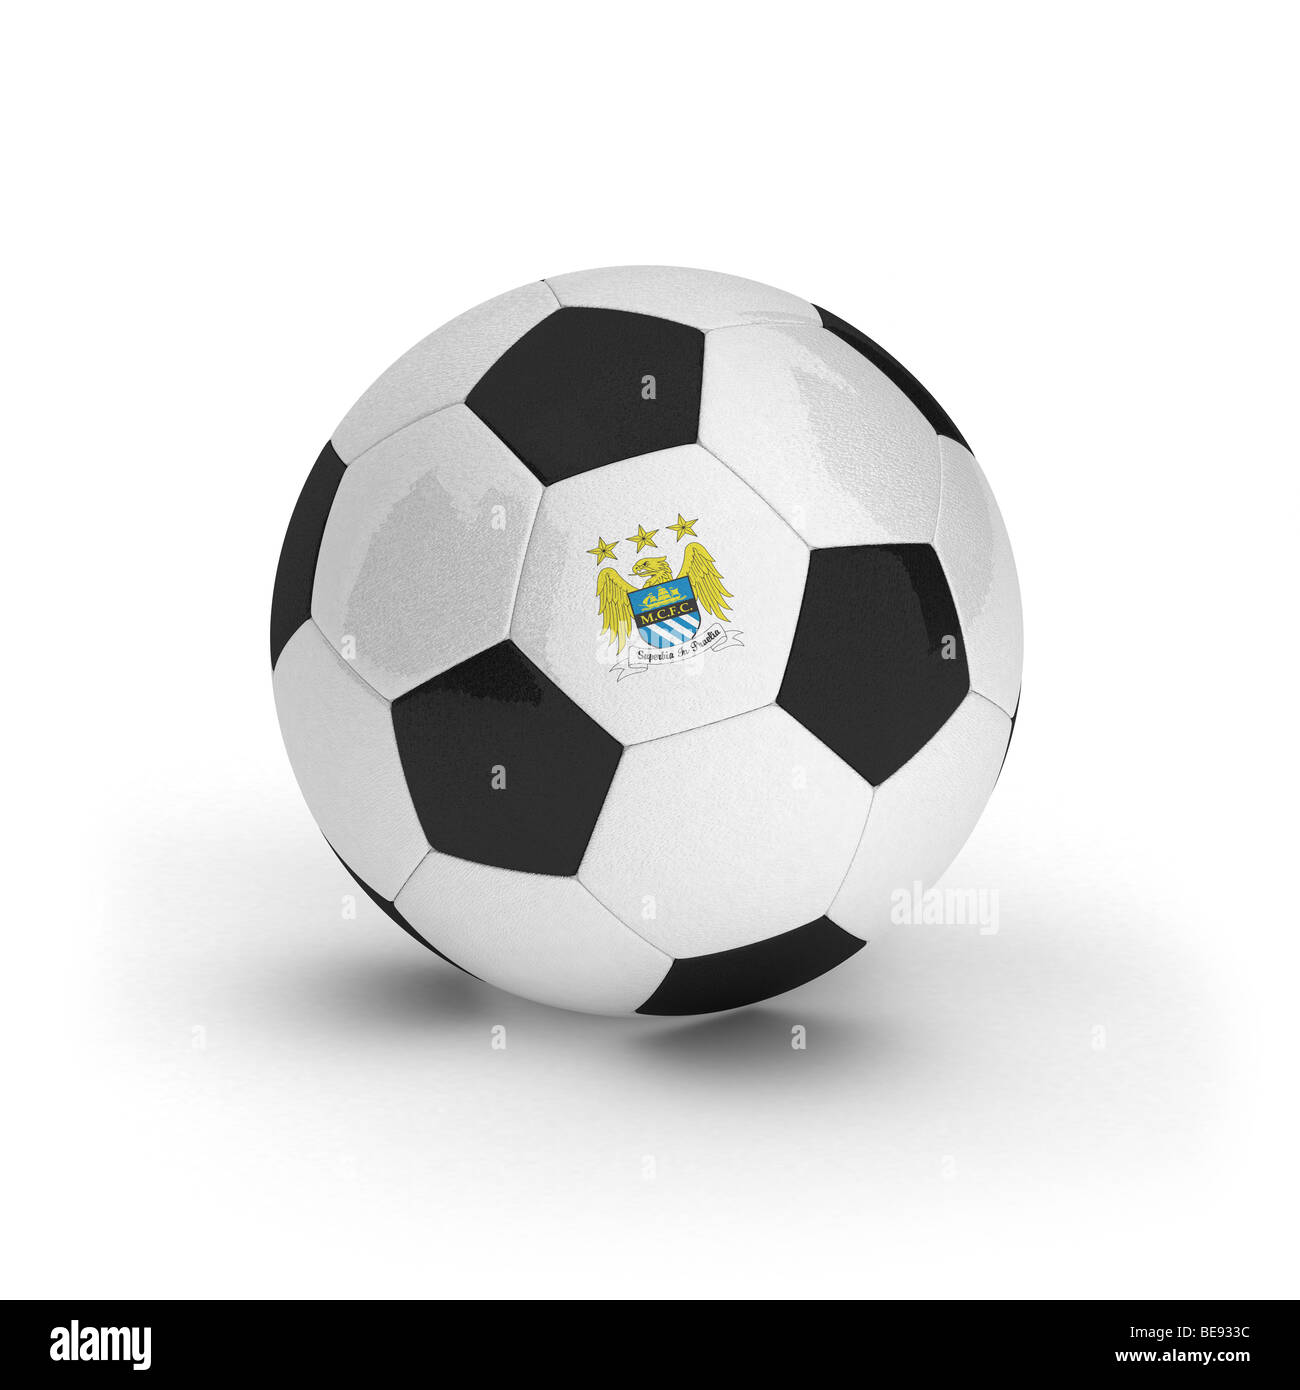 Le Club de football Manchester City emblème sur un ballon de foot Banque D'Images